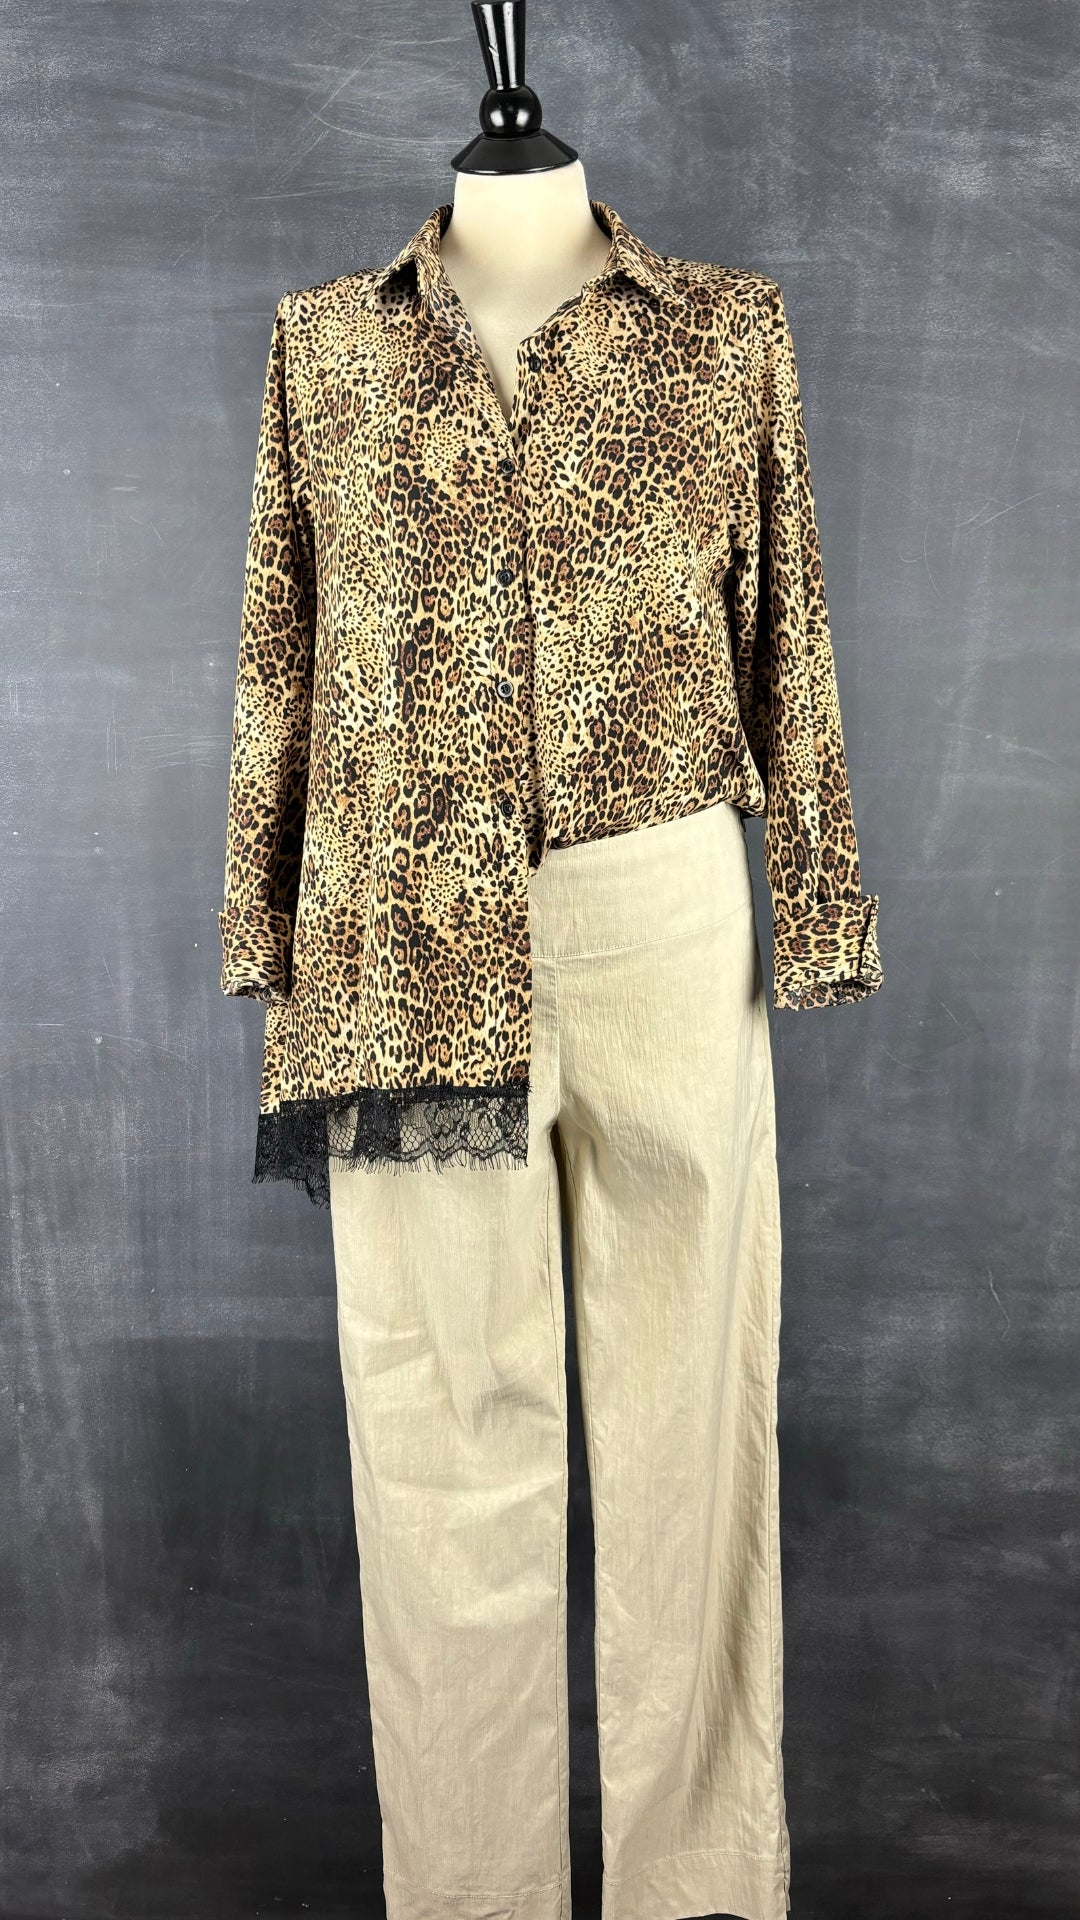 Pantalon beige en mélange de lin Sarah Pacini, taille 2 (m). Vue de l'agencement avec le chemisier léopard avec ourlet en dentelle.